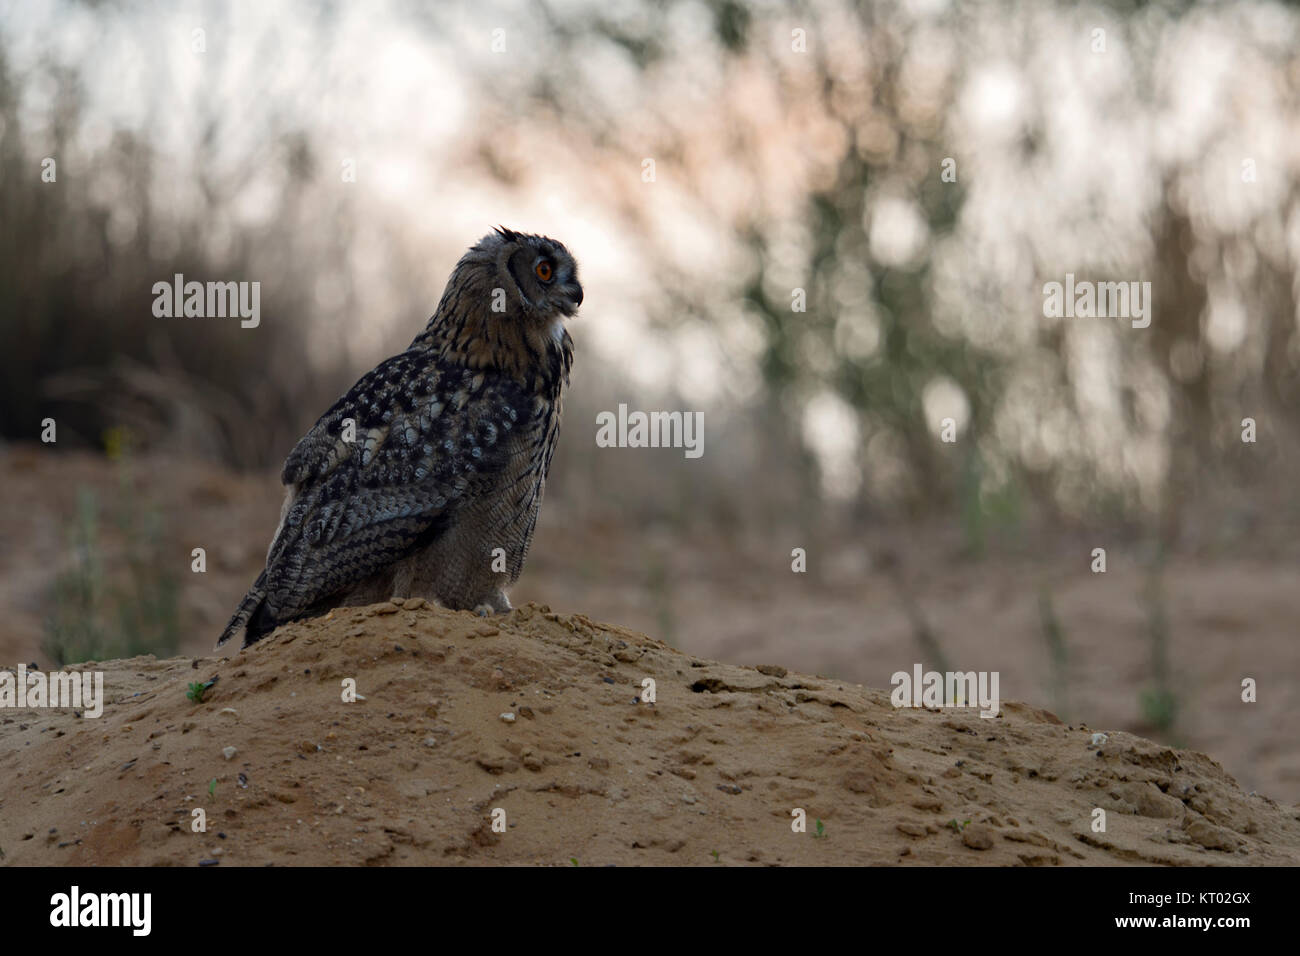 Grand / Owl Bubo bubo Europaeischer Uhu ( ), jeune oiseau, est assis sur une petite colline, au crépuscule, lumière douce, dans un cadre naturel, de la faune, de l'Europe. Banque D'Images